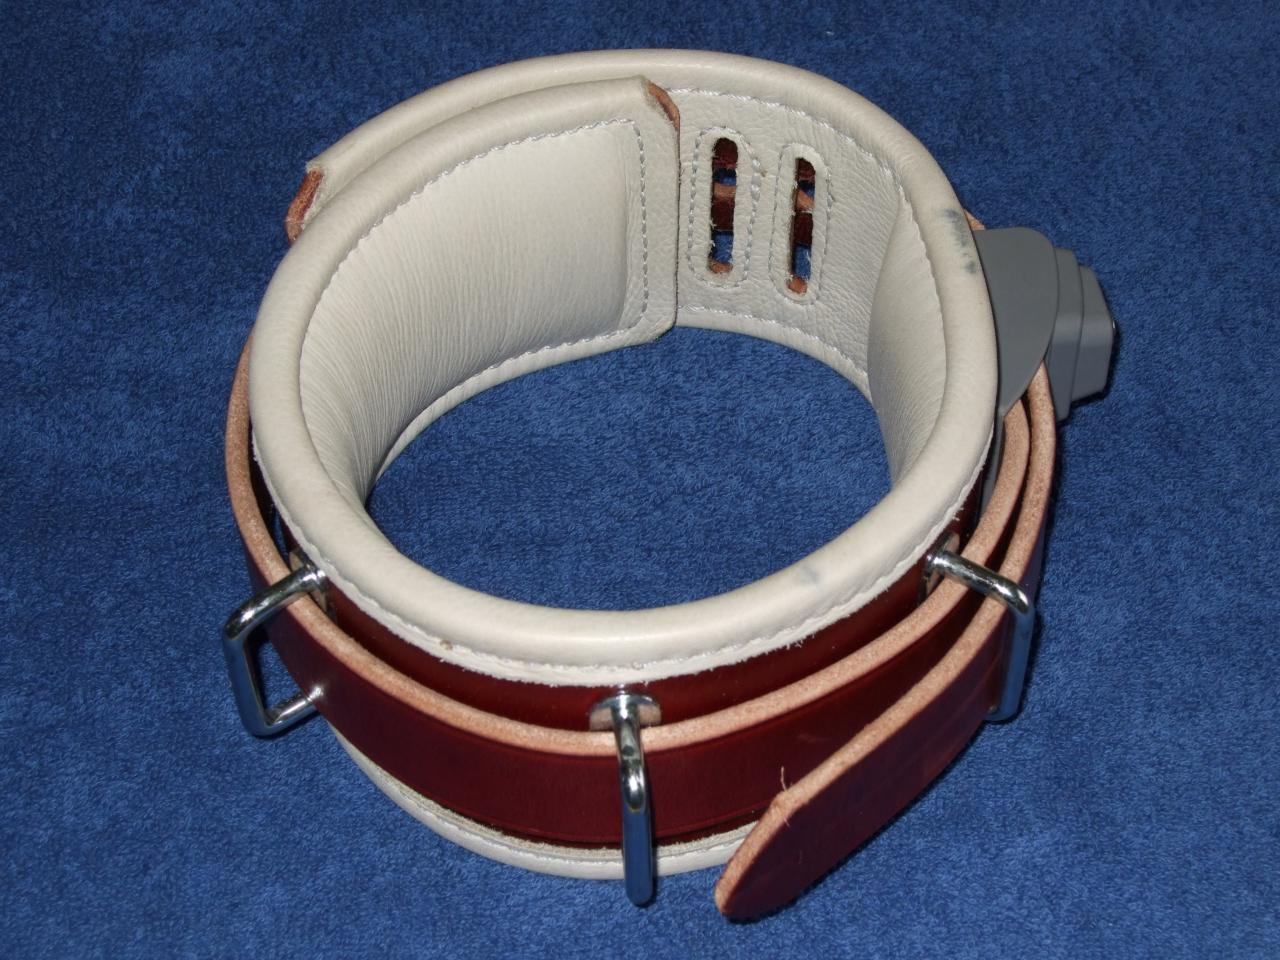 Humane Restraint abschliessbares Lederhalsband 33-44 cm